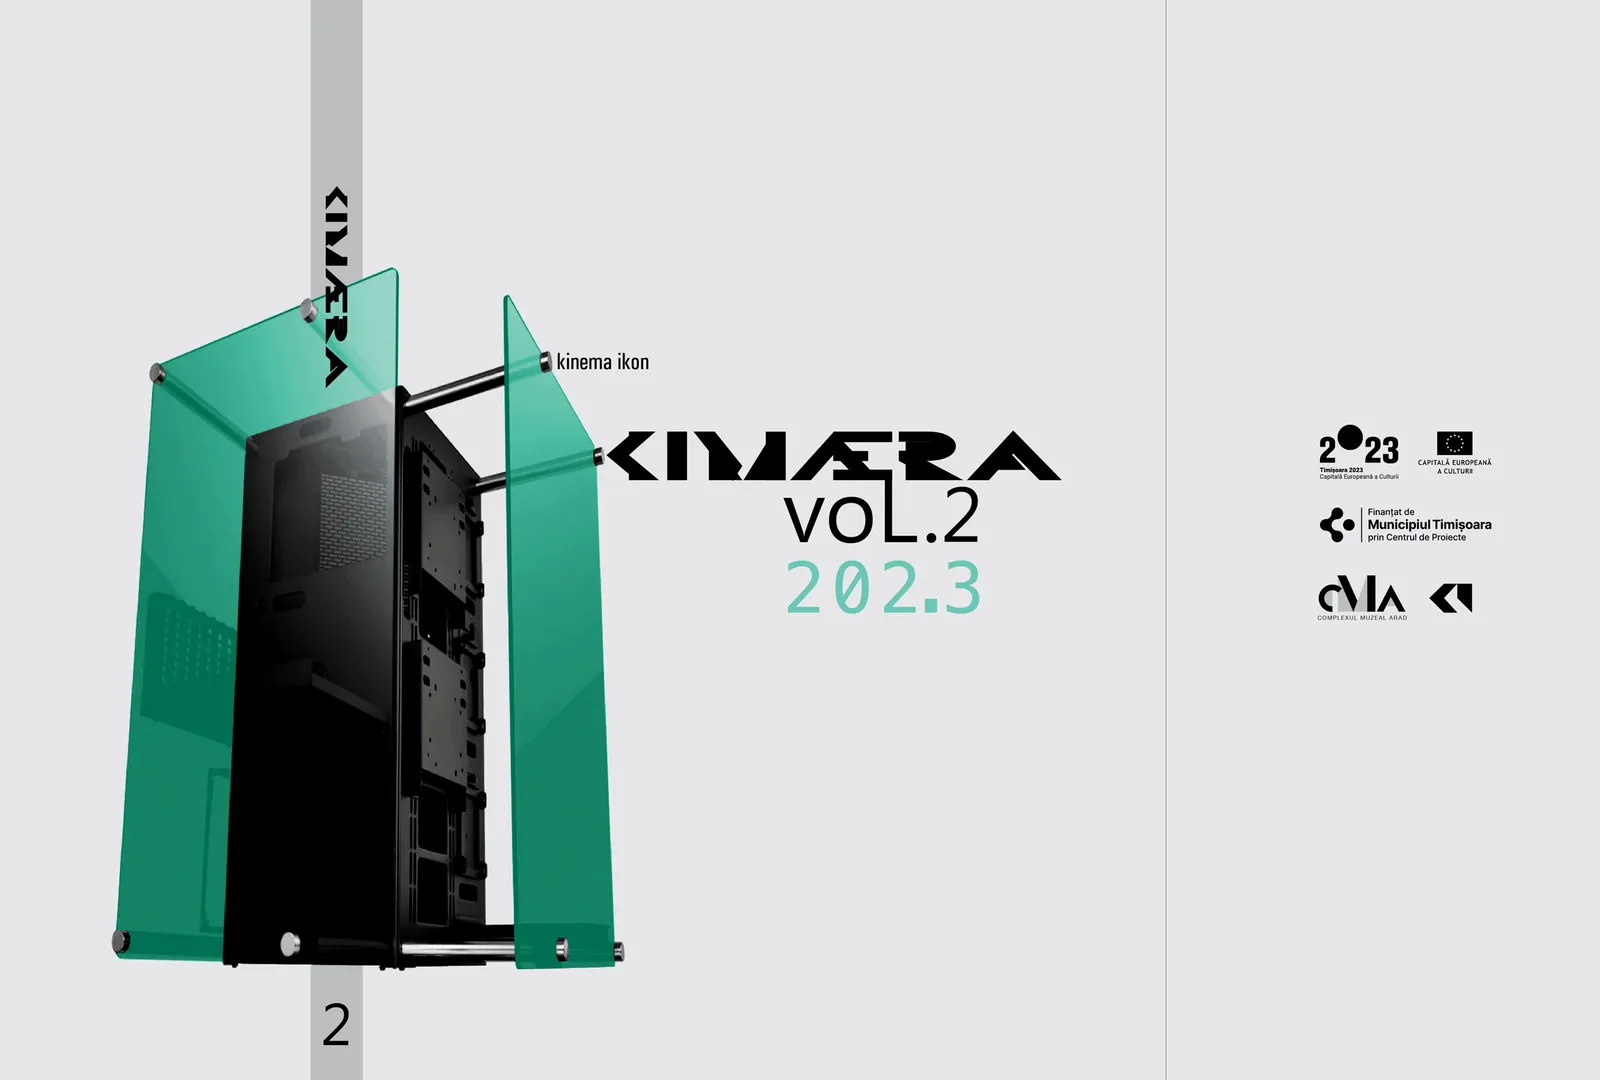 Lansarea catalogului kinema ikon: kimæra vol. 2